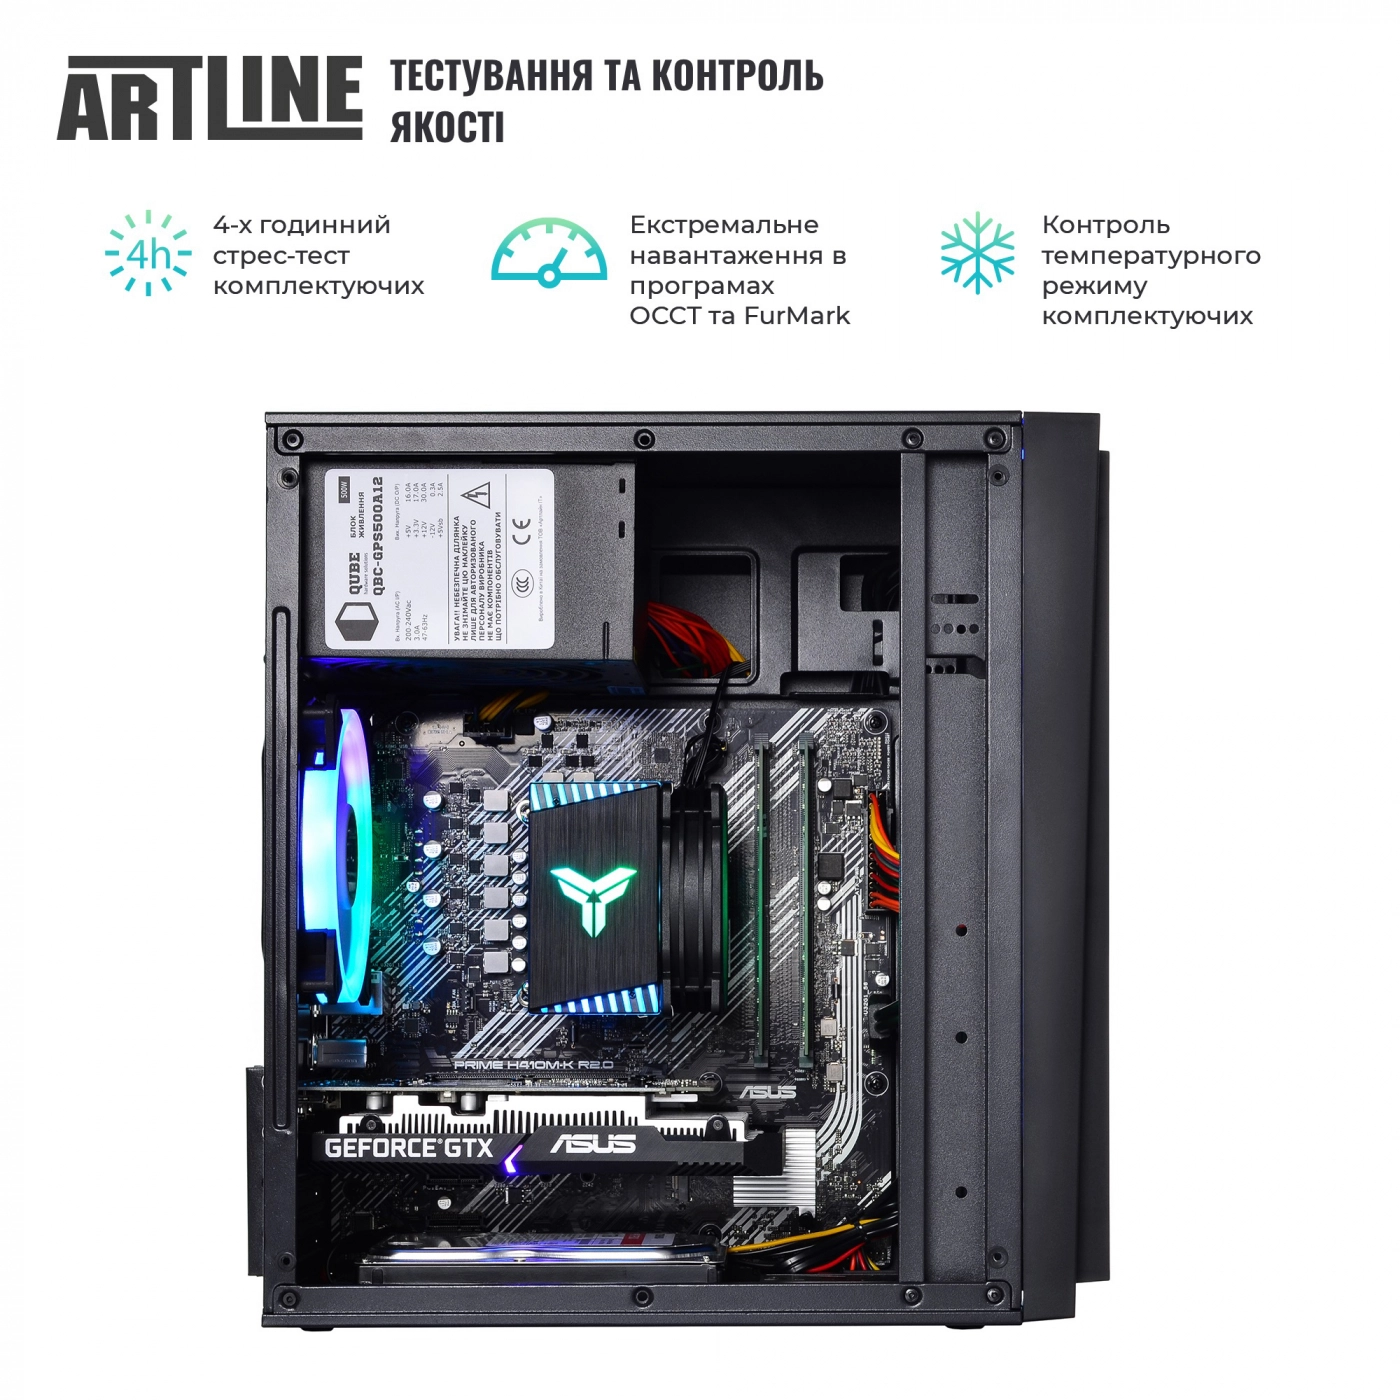 Купить Компьютер ARTLINE Gaming X43v31 - фото 6